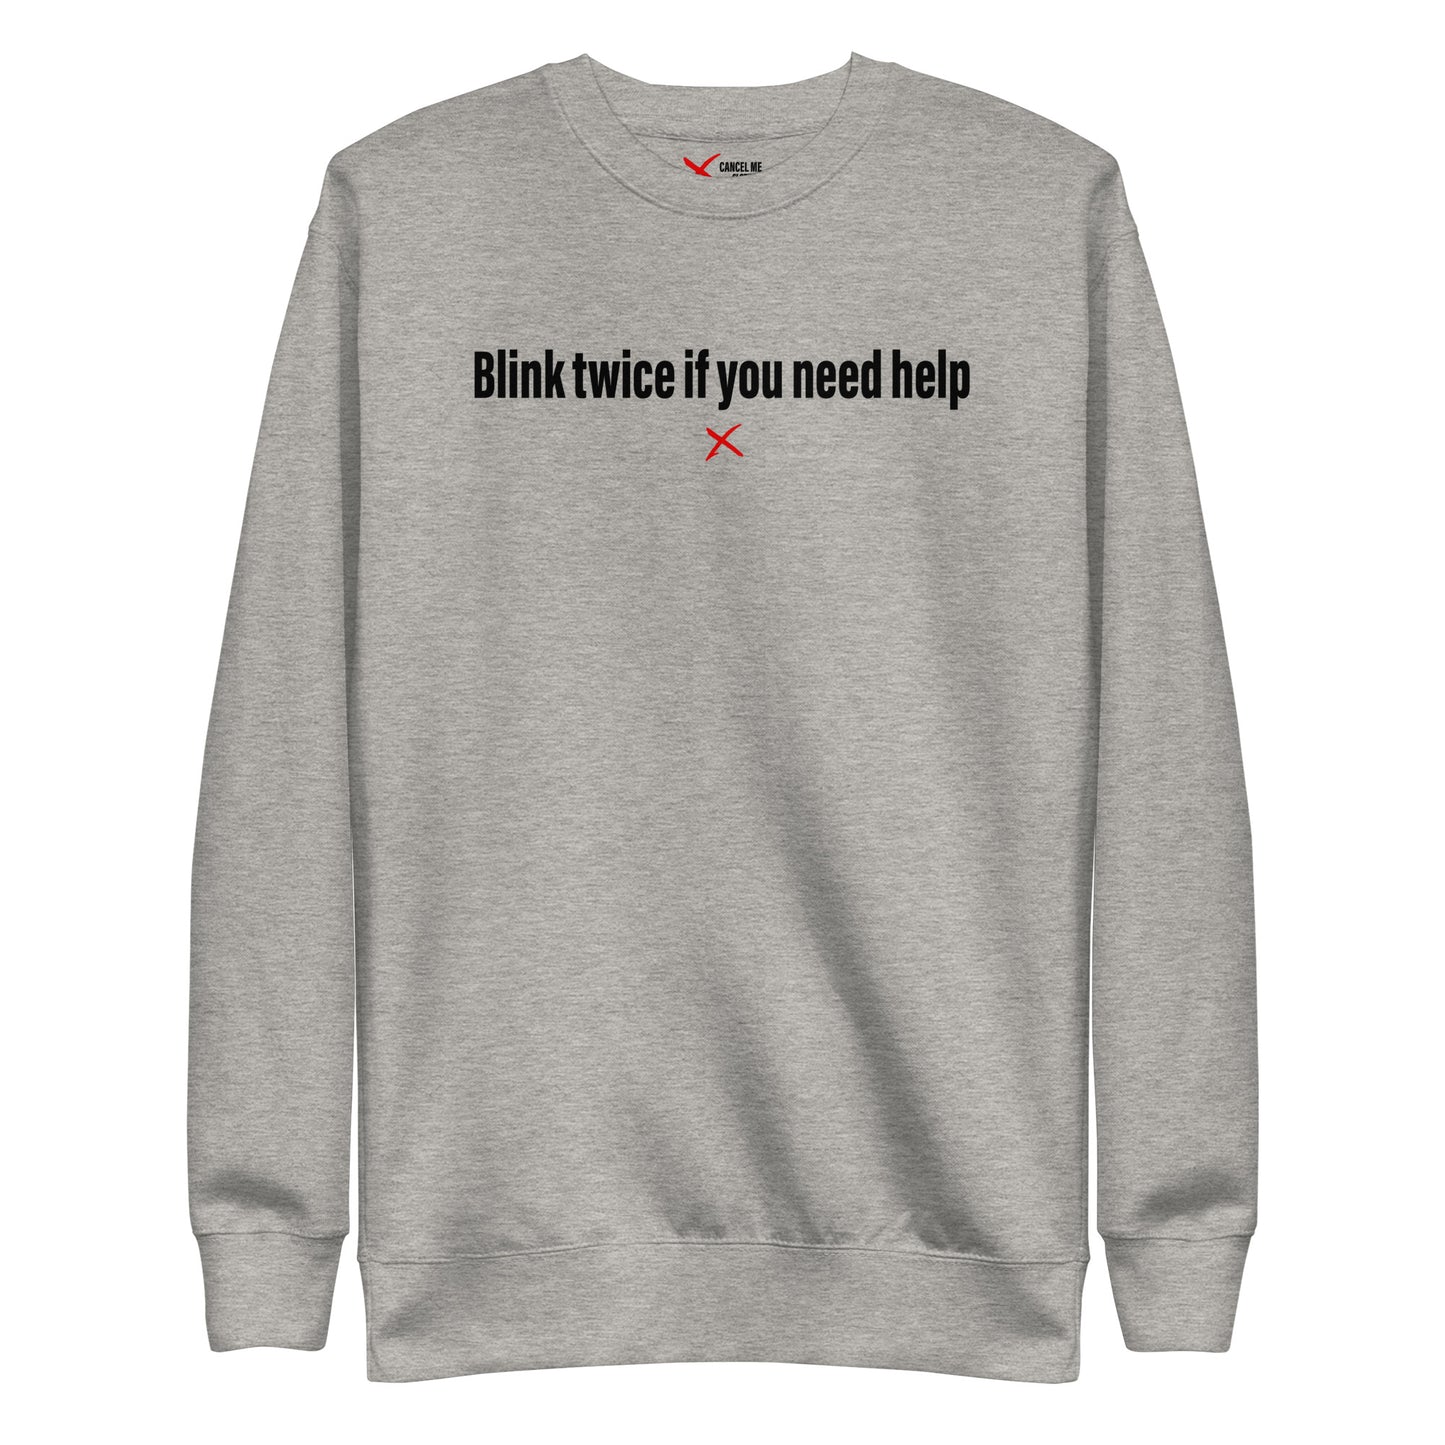 Blink twice if you need help - Sweatshirt